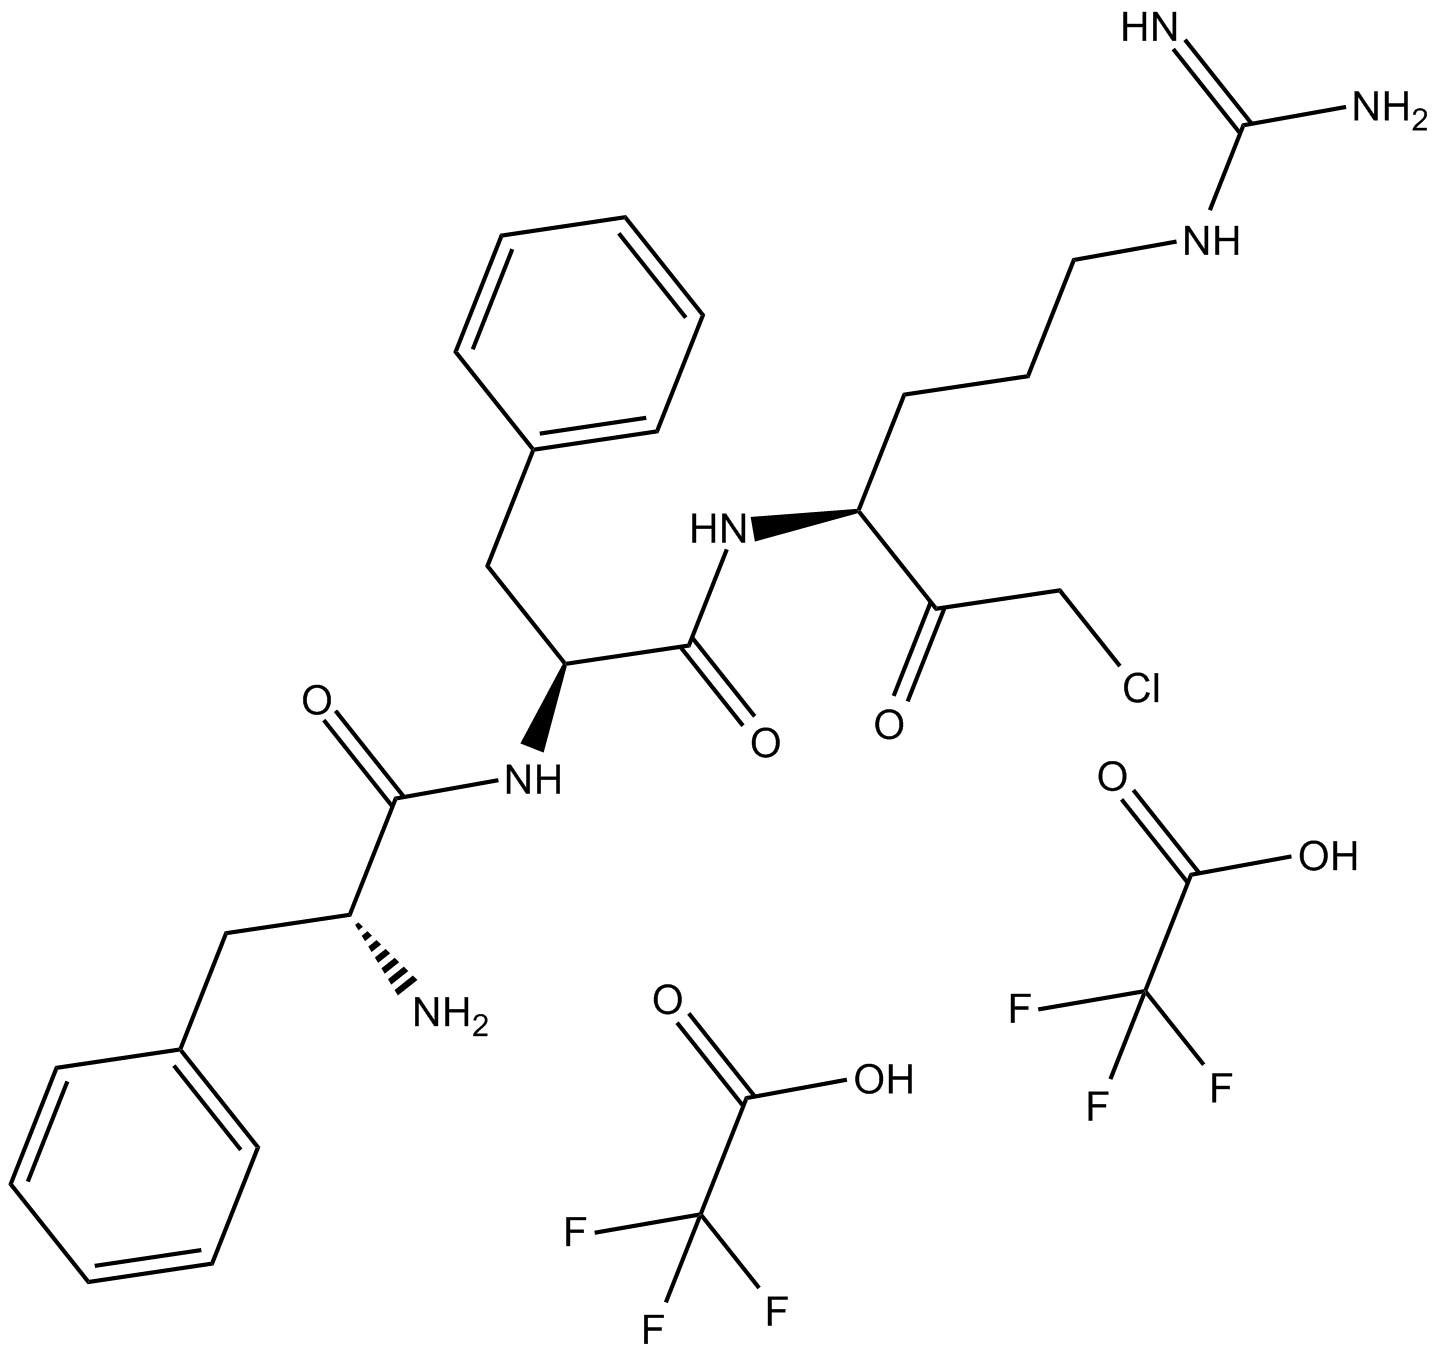 PPACKII (trifluoroacetate salt) Chemische Struktur